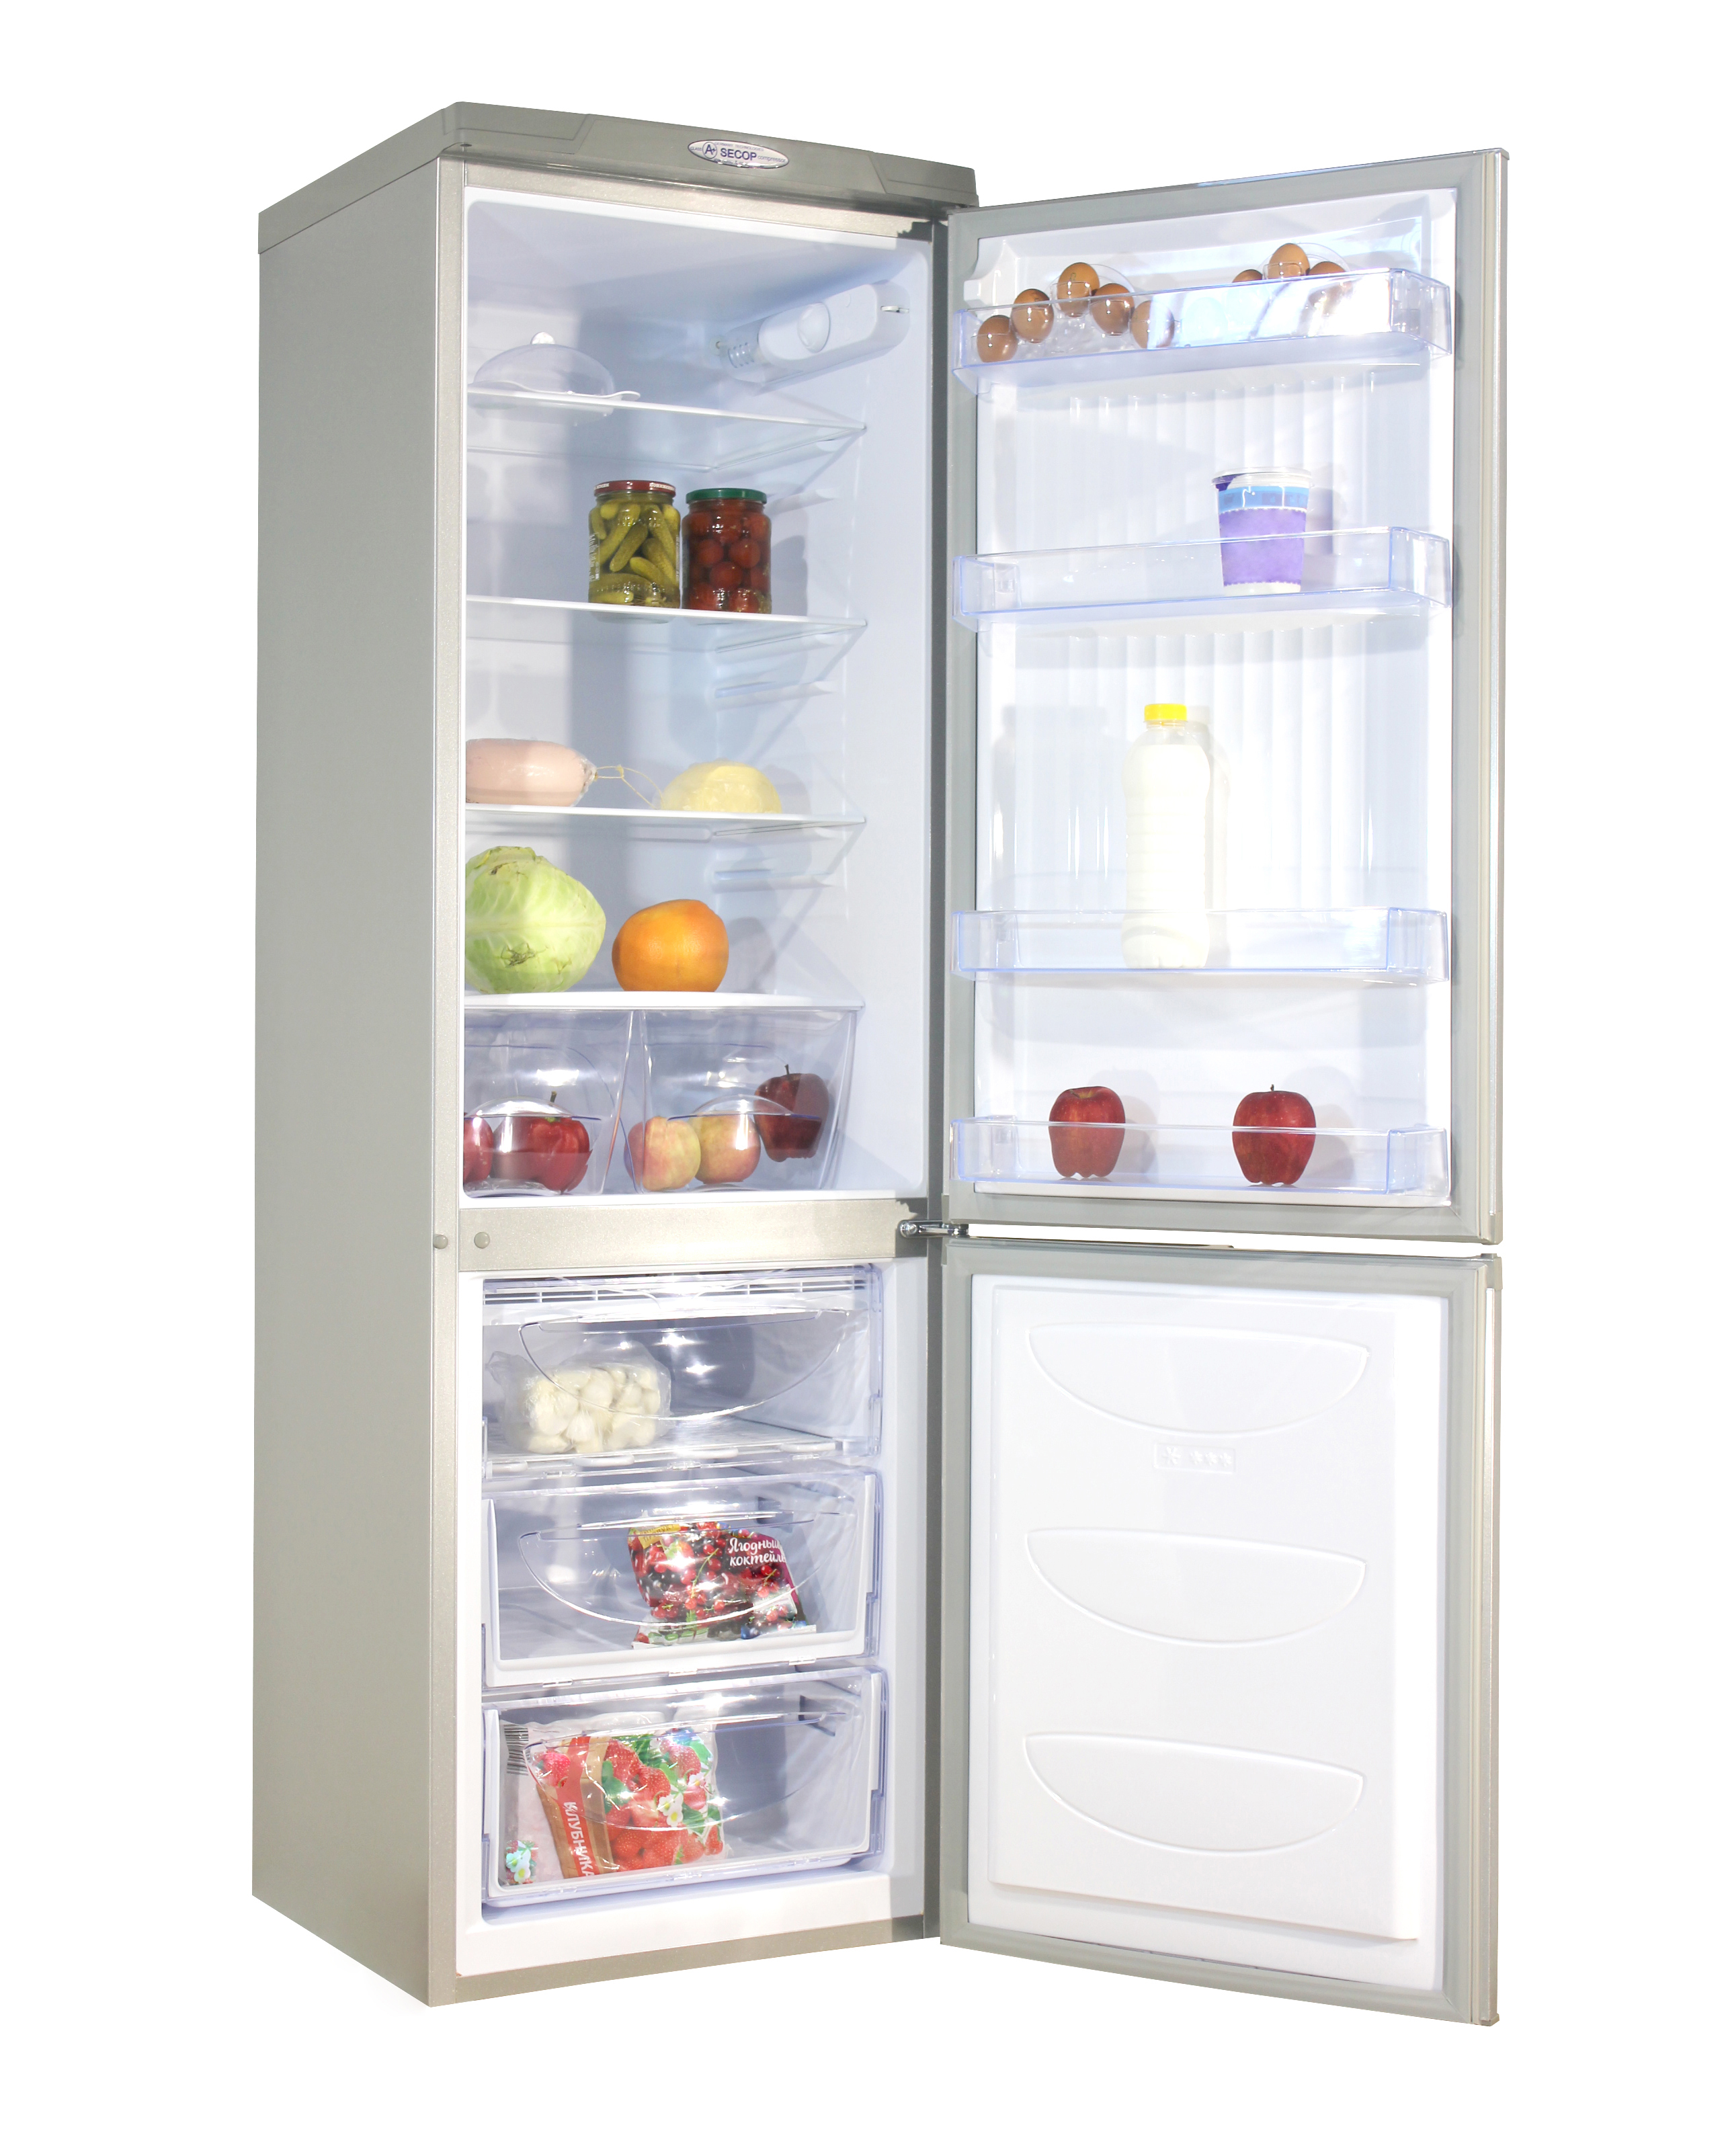 Холодильник двухкамерный купить в москве цена. Холодильник don r-291 mi. Холодильник don r 291 металлик искристый. Холодильник don r-291 ng нерж.сталь. Холодильник don r-290 ng.